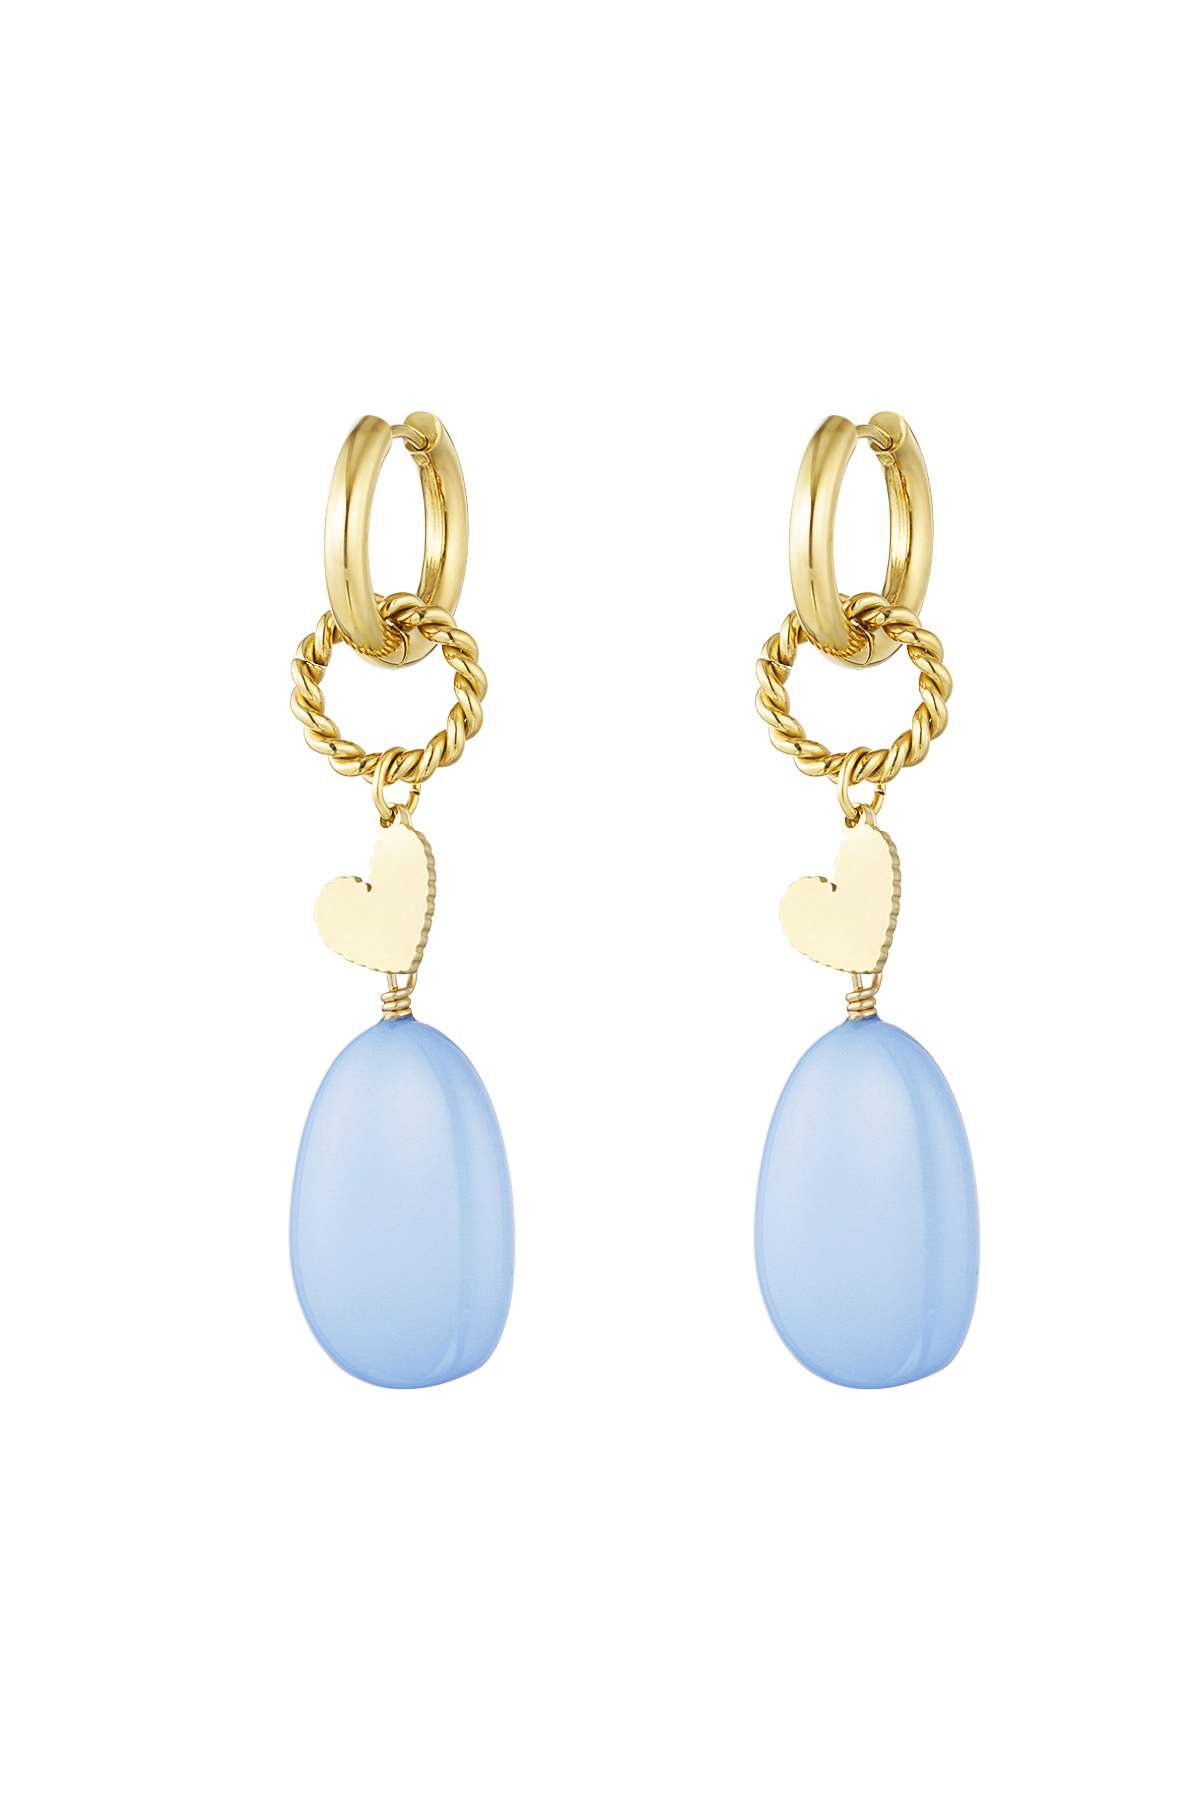 Earrings sea vibe - light blue 